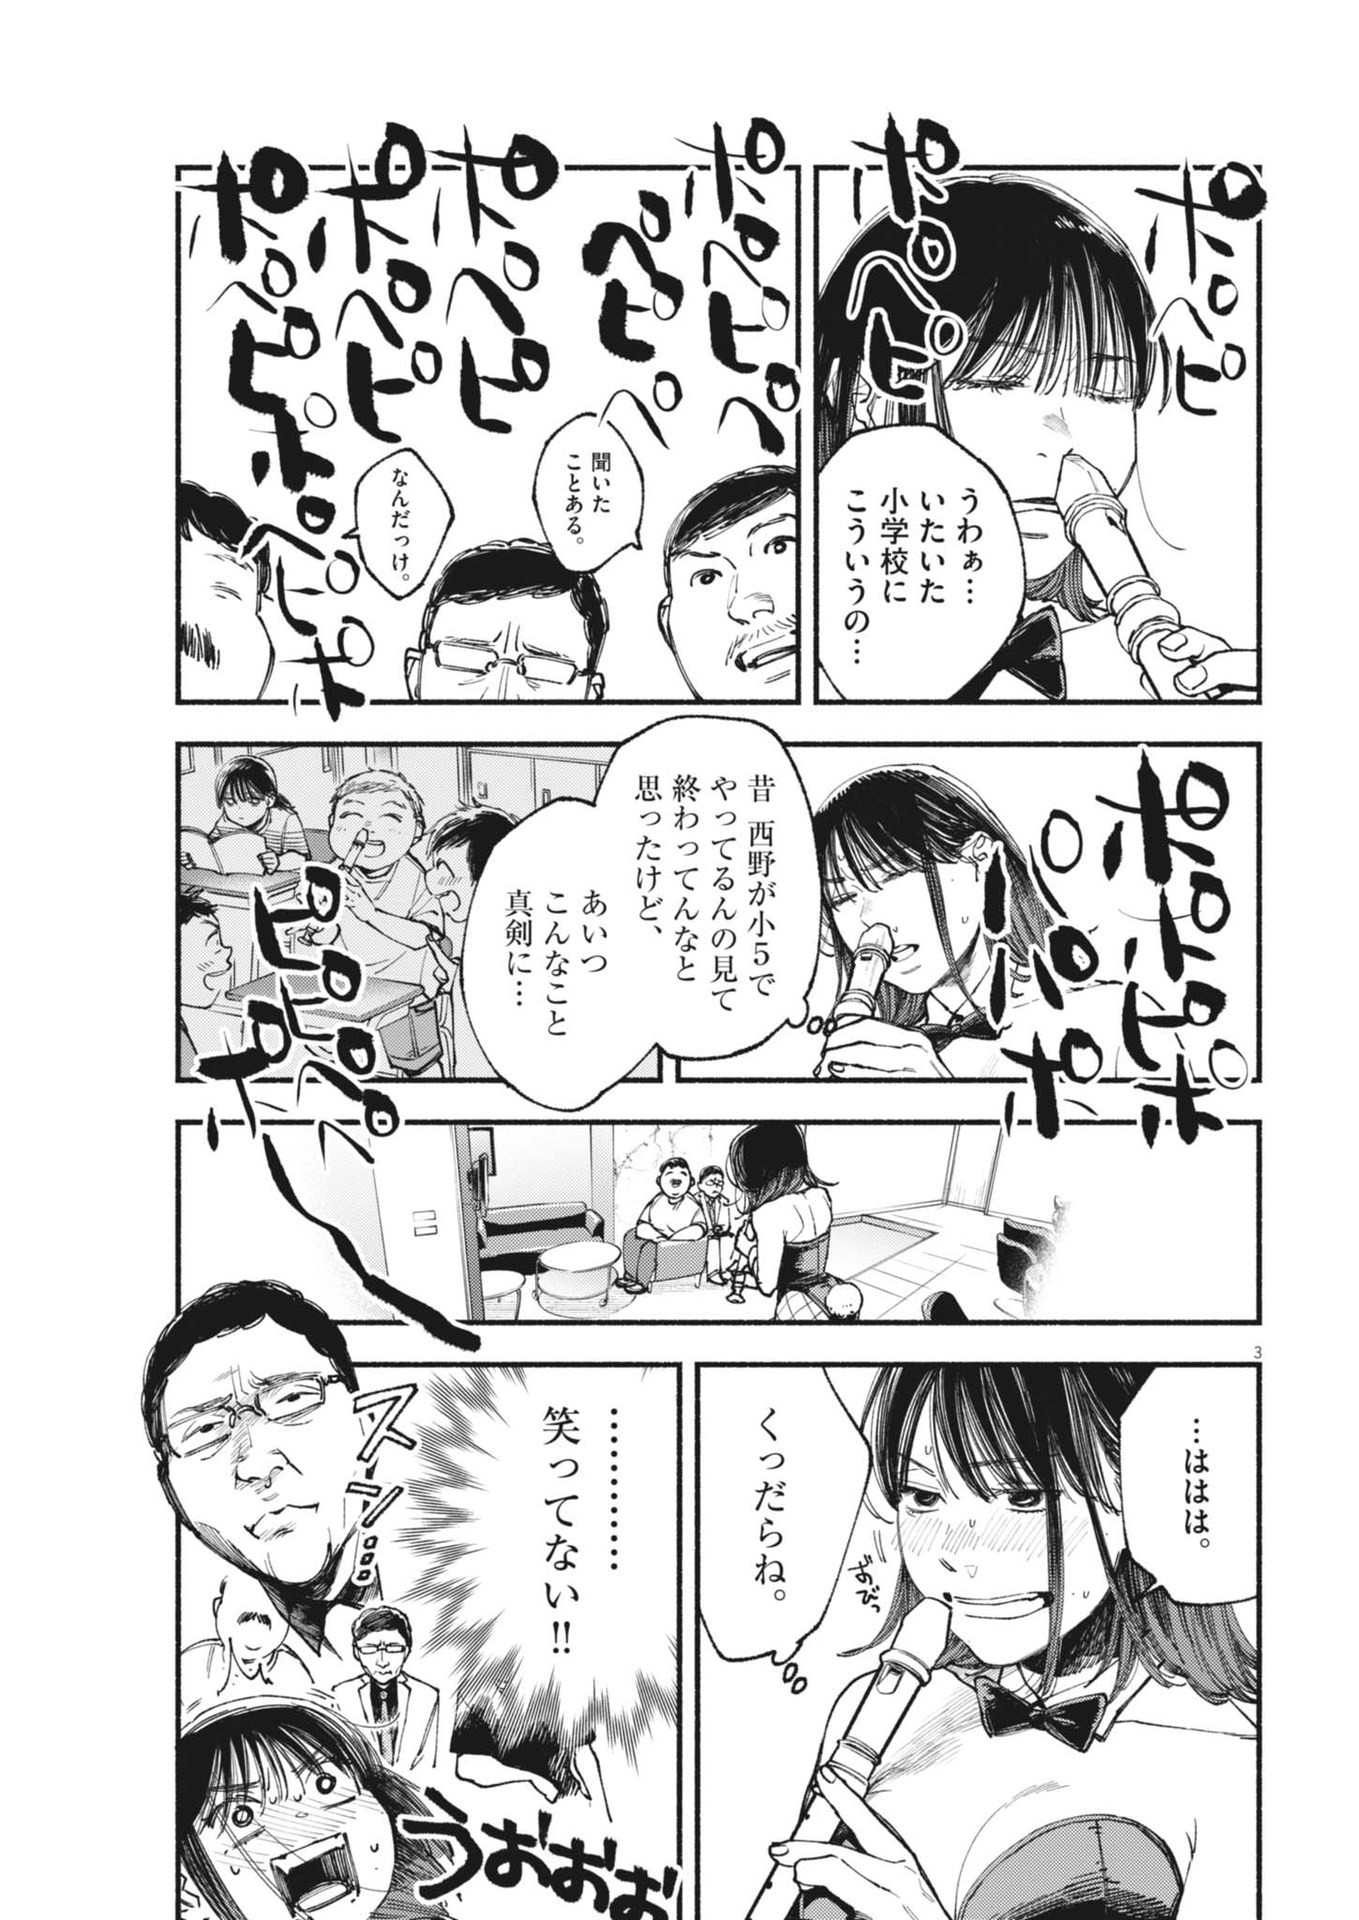 Konoyo wa Tatakau Kachi ga Aru  - Chapter 22 - Page 3